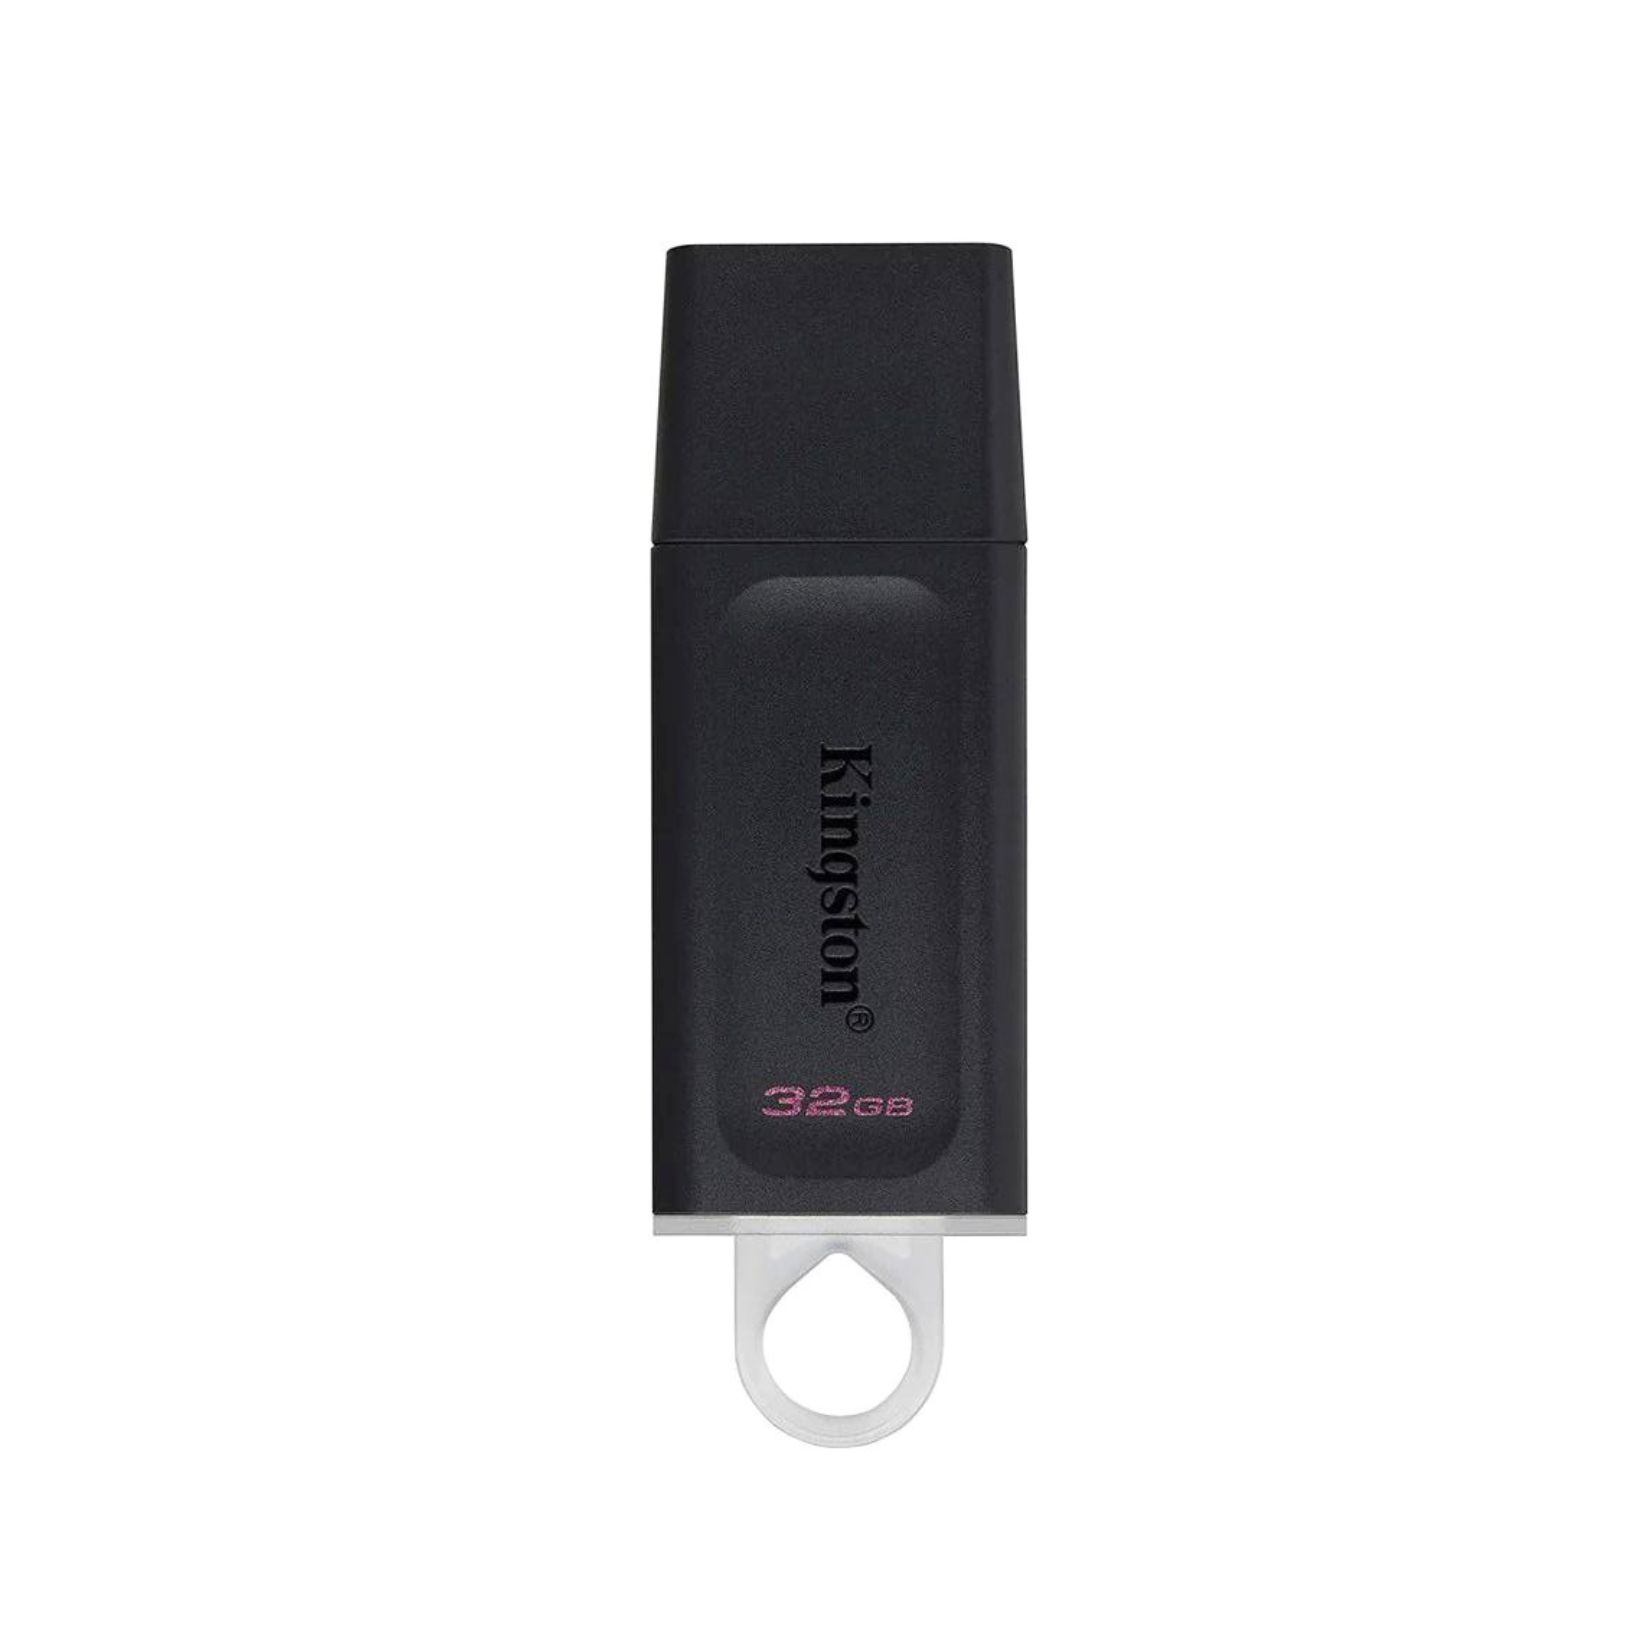 KINGSTON 32GB USB FAST DATA TRAVELER [USB 32GB-8]